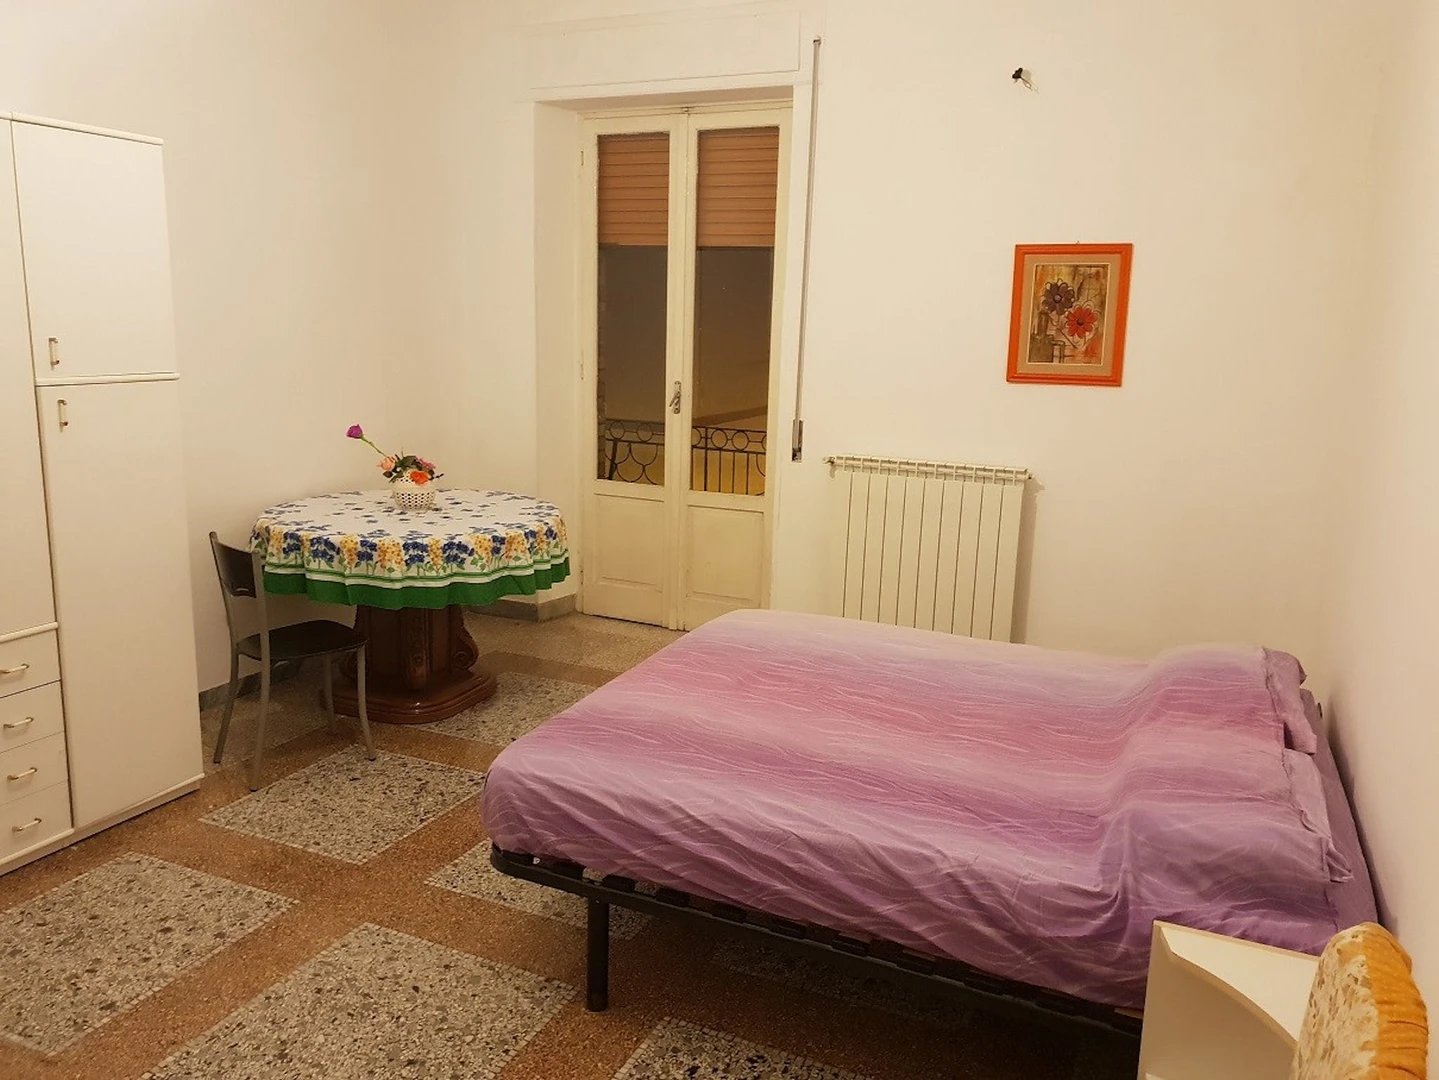 Wspólny pokój z innym studentem w Foggia